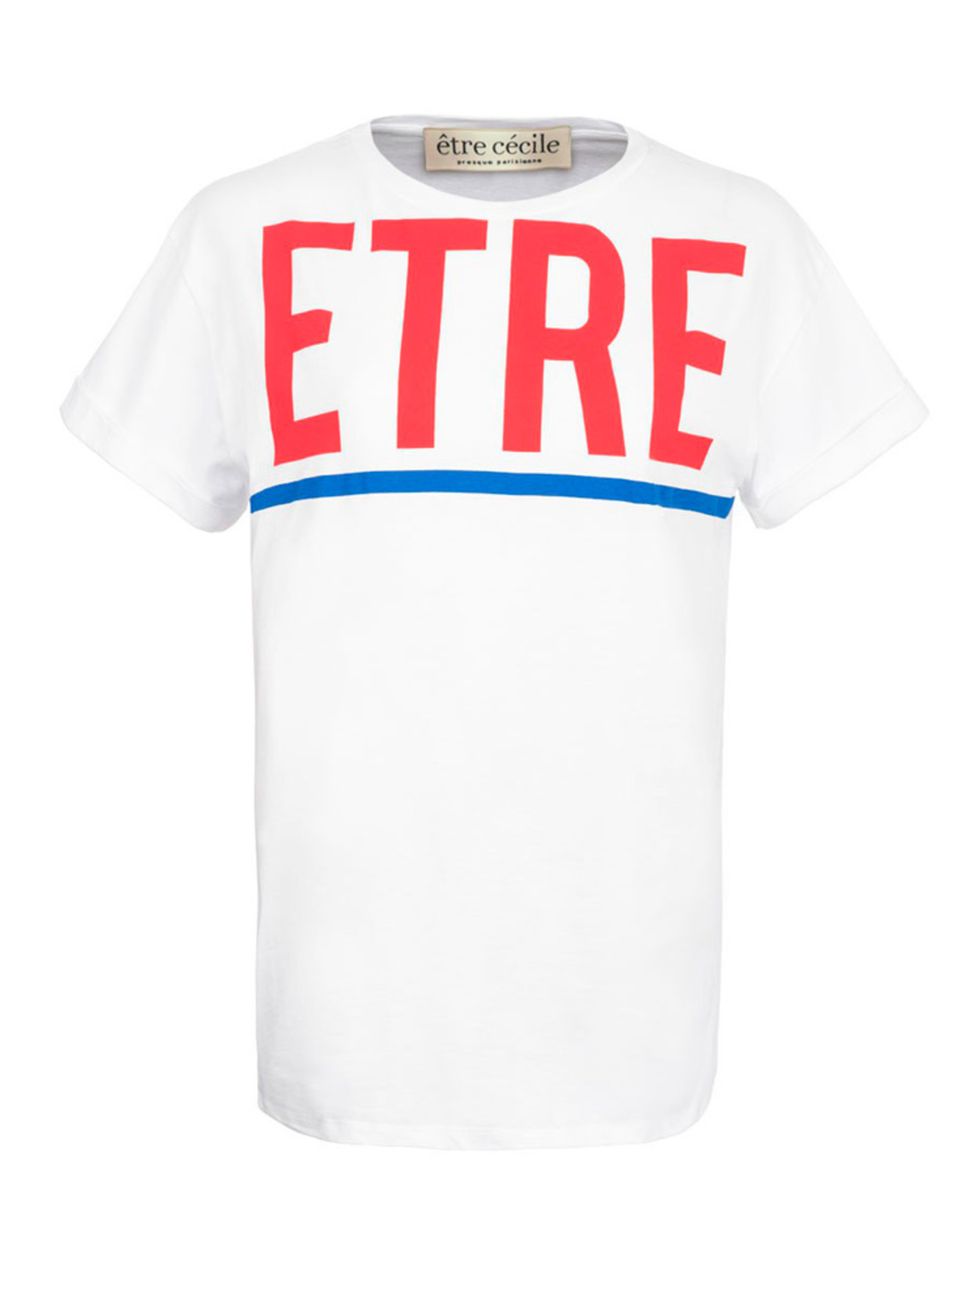 <p><a href="http://www.etrececile.com/etre-cycle-oversize-t-shirt-3334.html" target="_blank">Être Cécile</a> T-Shirt, £75</p>